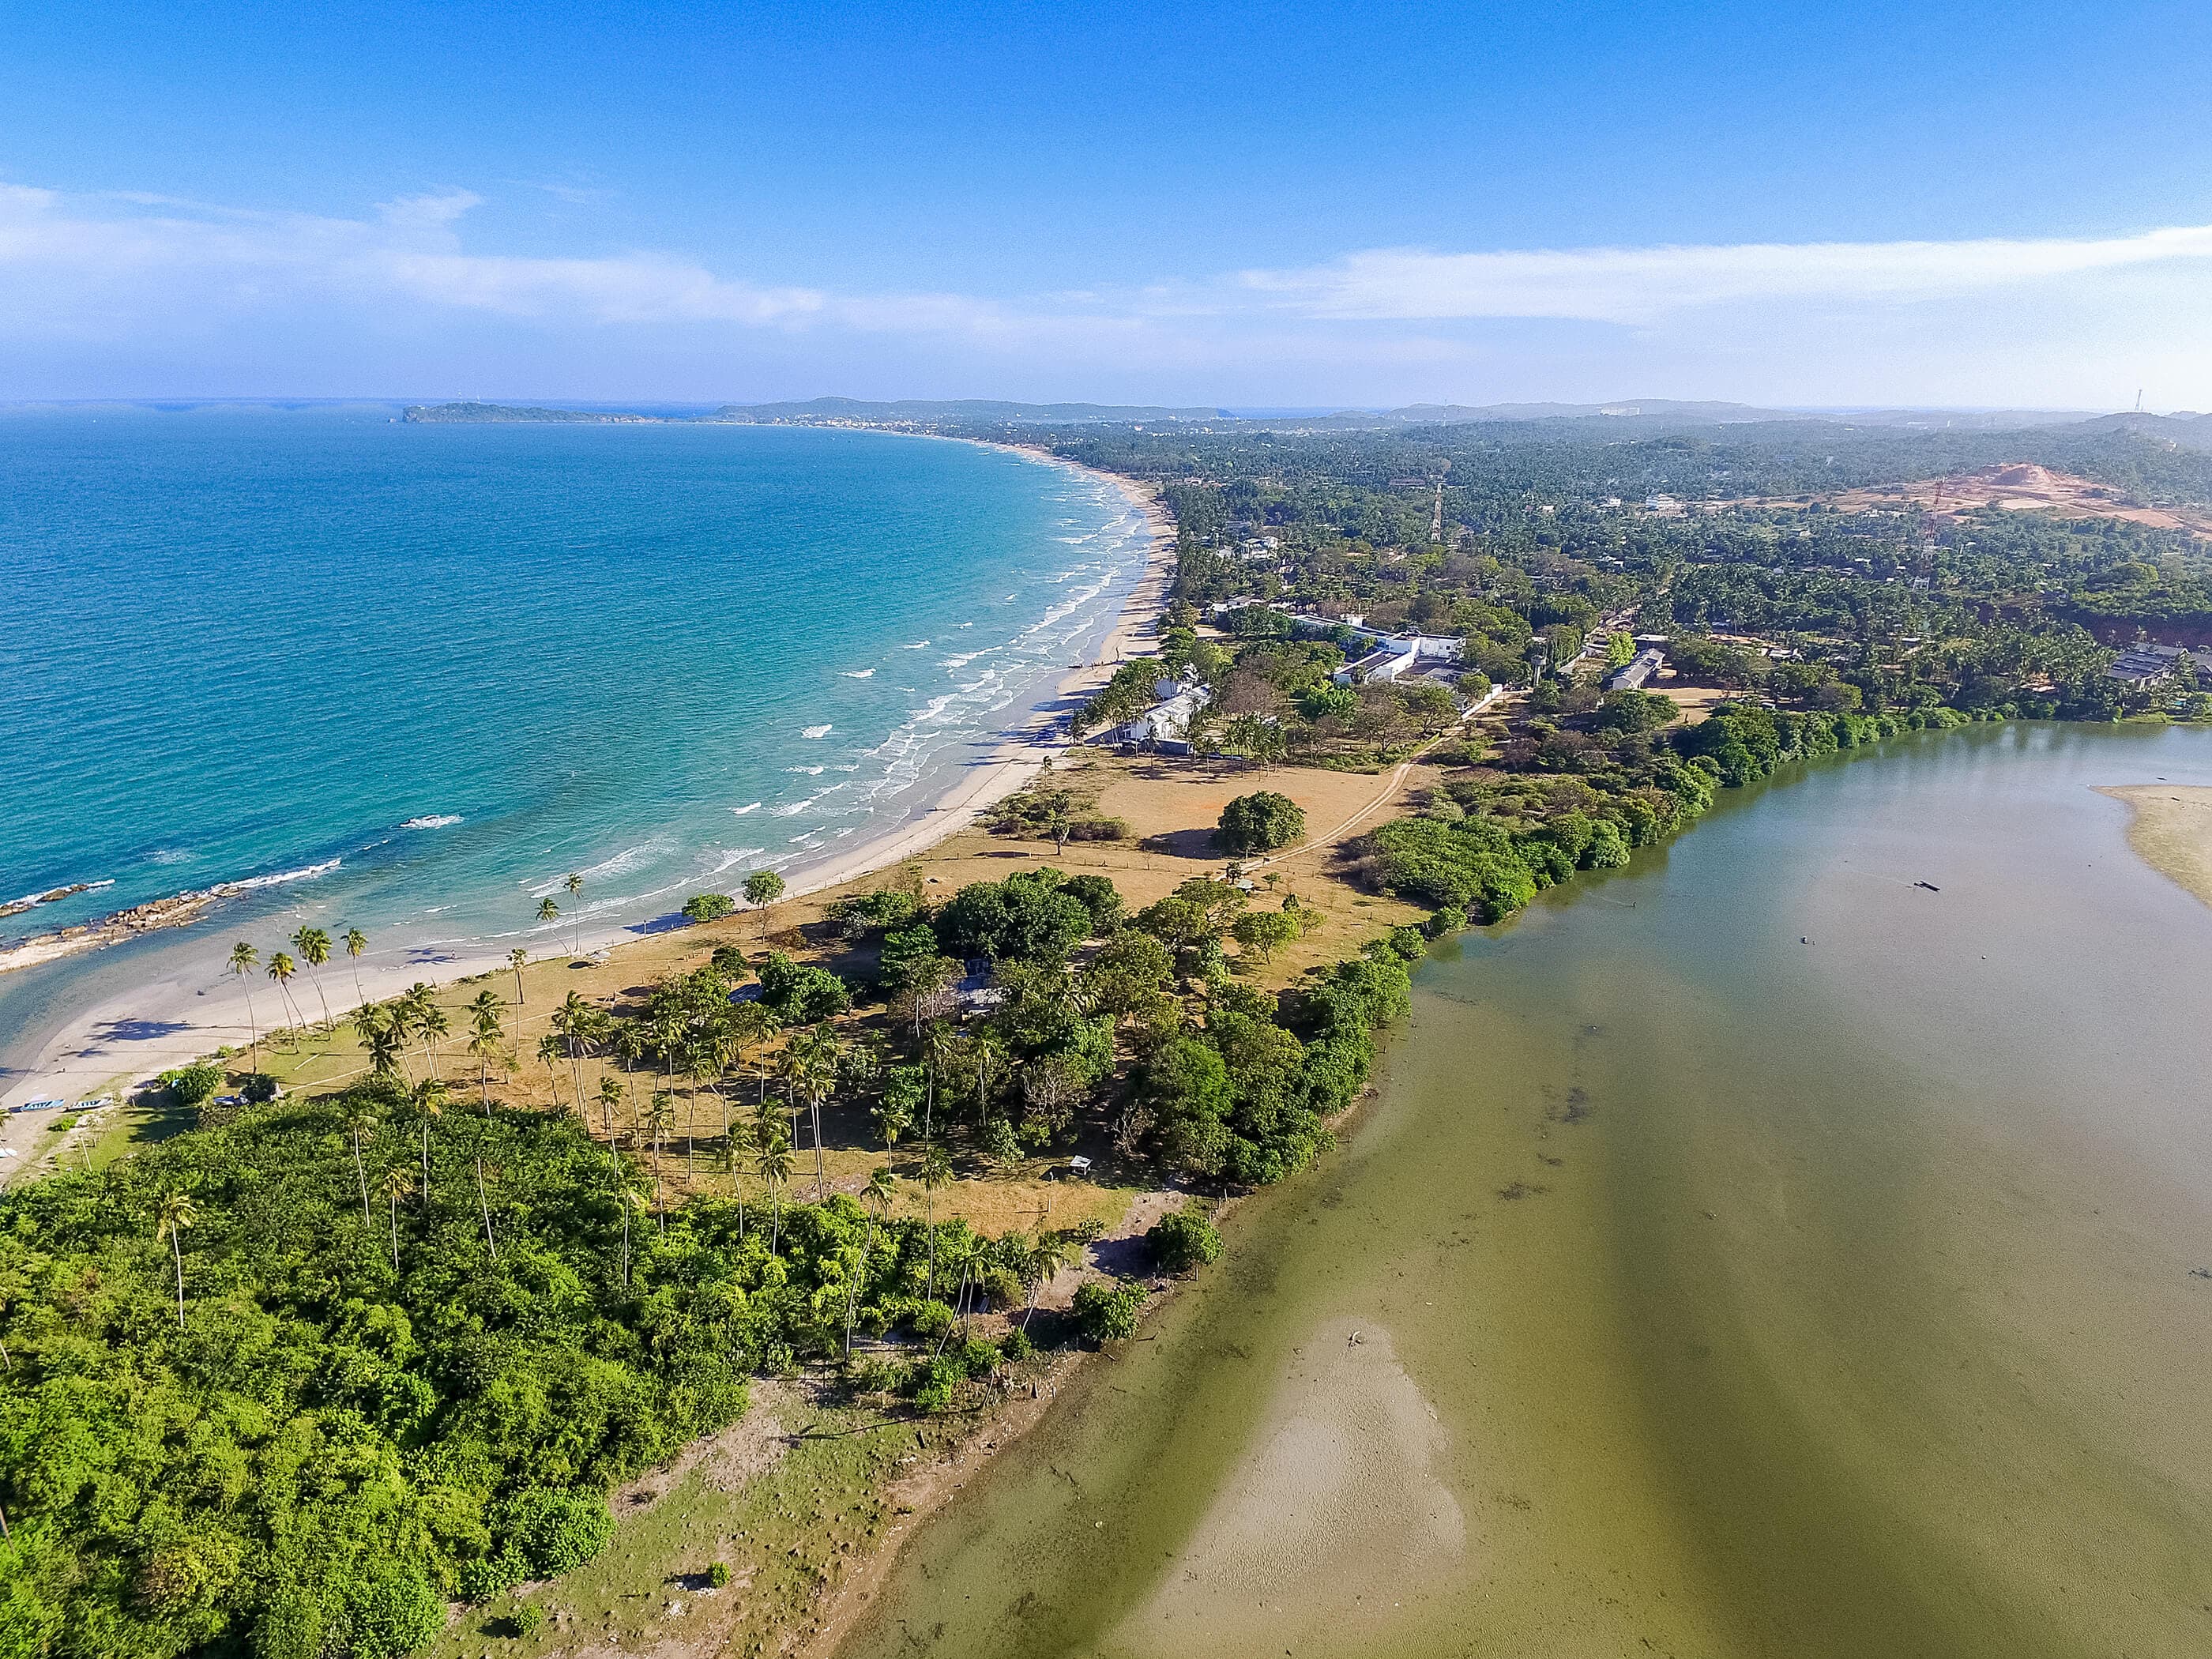 يتدفق النهر إلى خليج باك للمحيط الهندي بالقرب من شاطئ نيلافيلي في ترينكومالي ، سريلانكا.